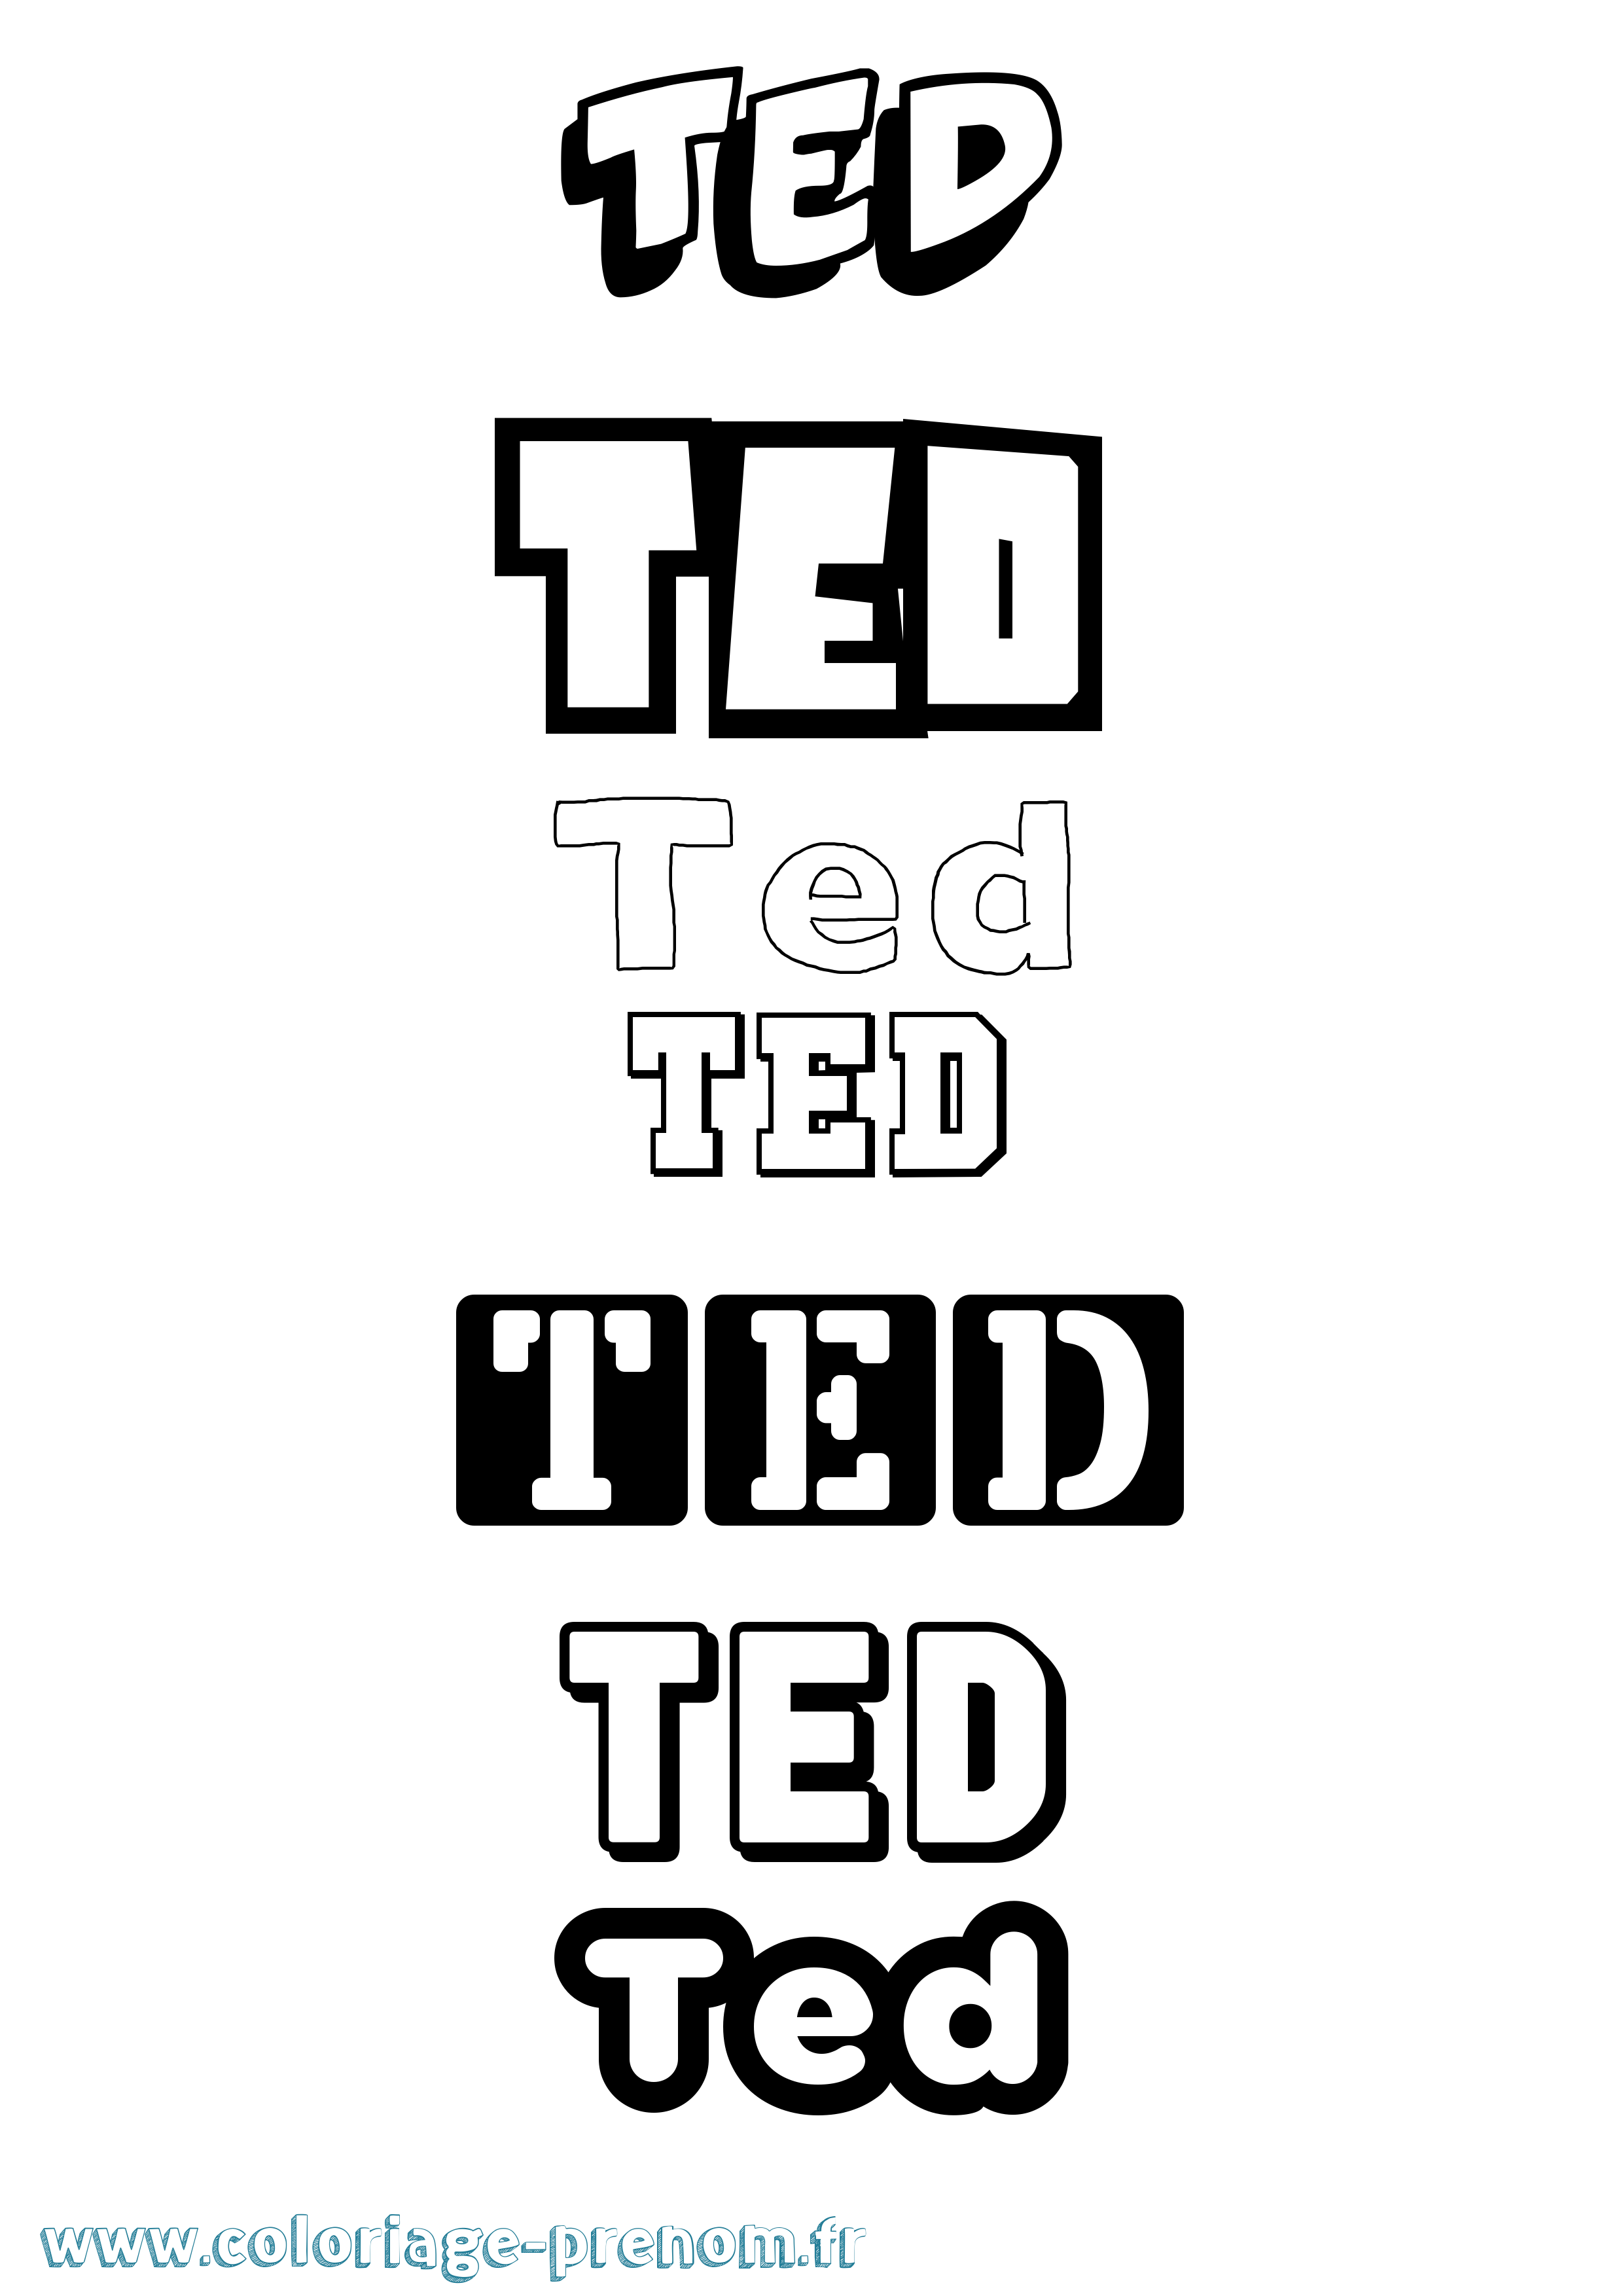 Coloriage prénom Ted Simple